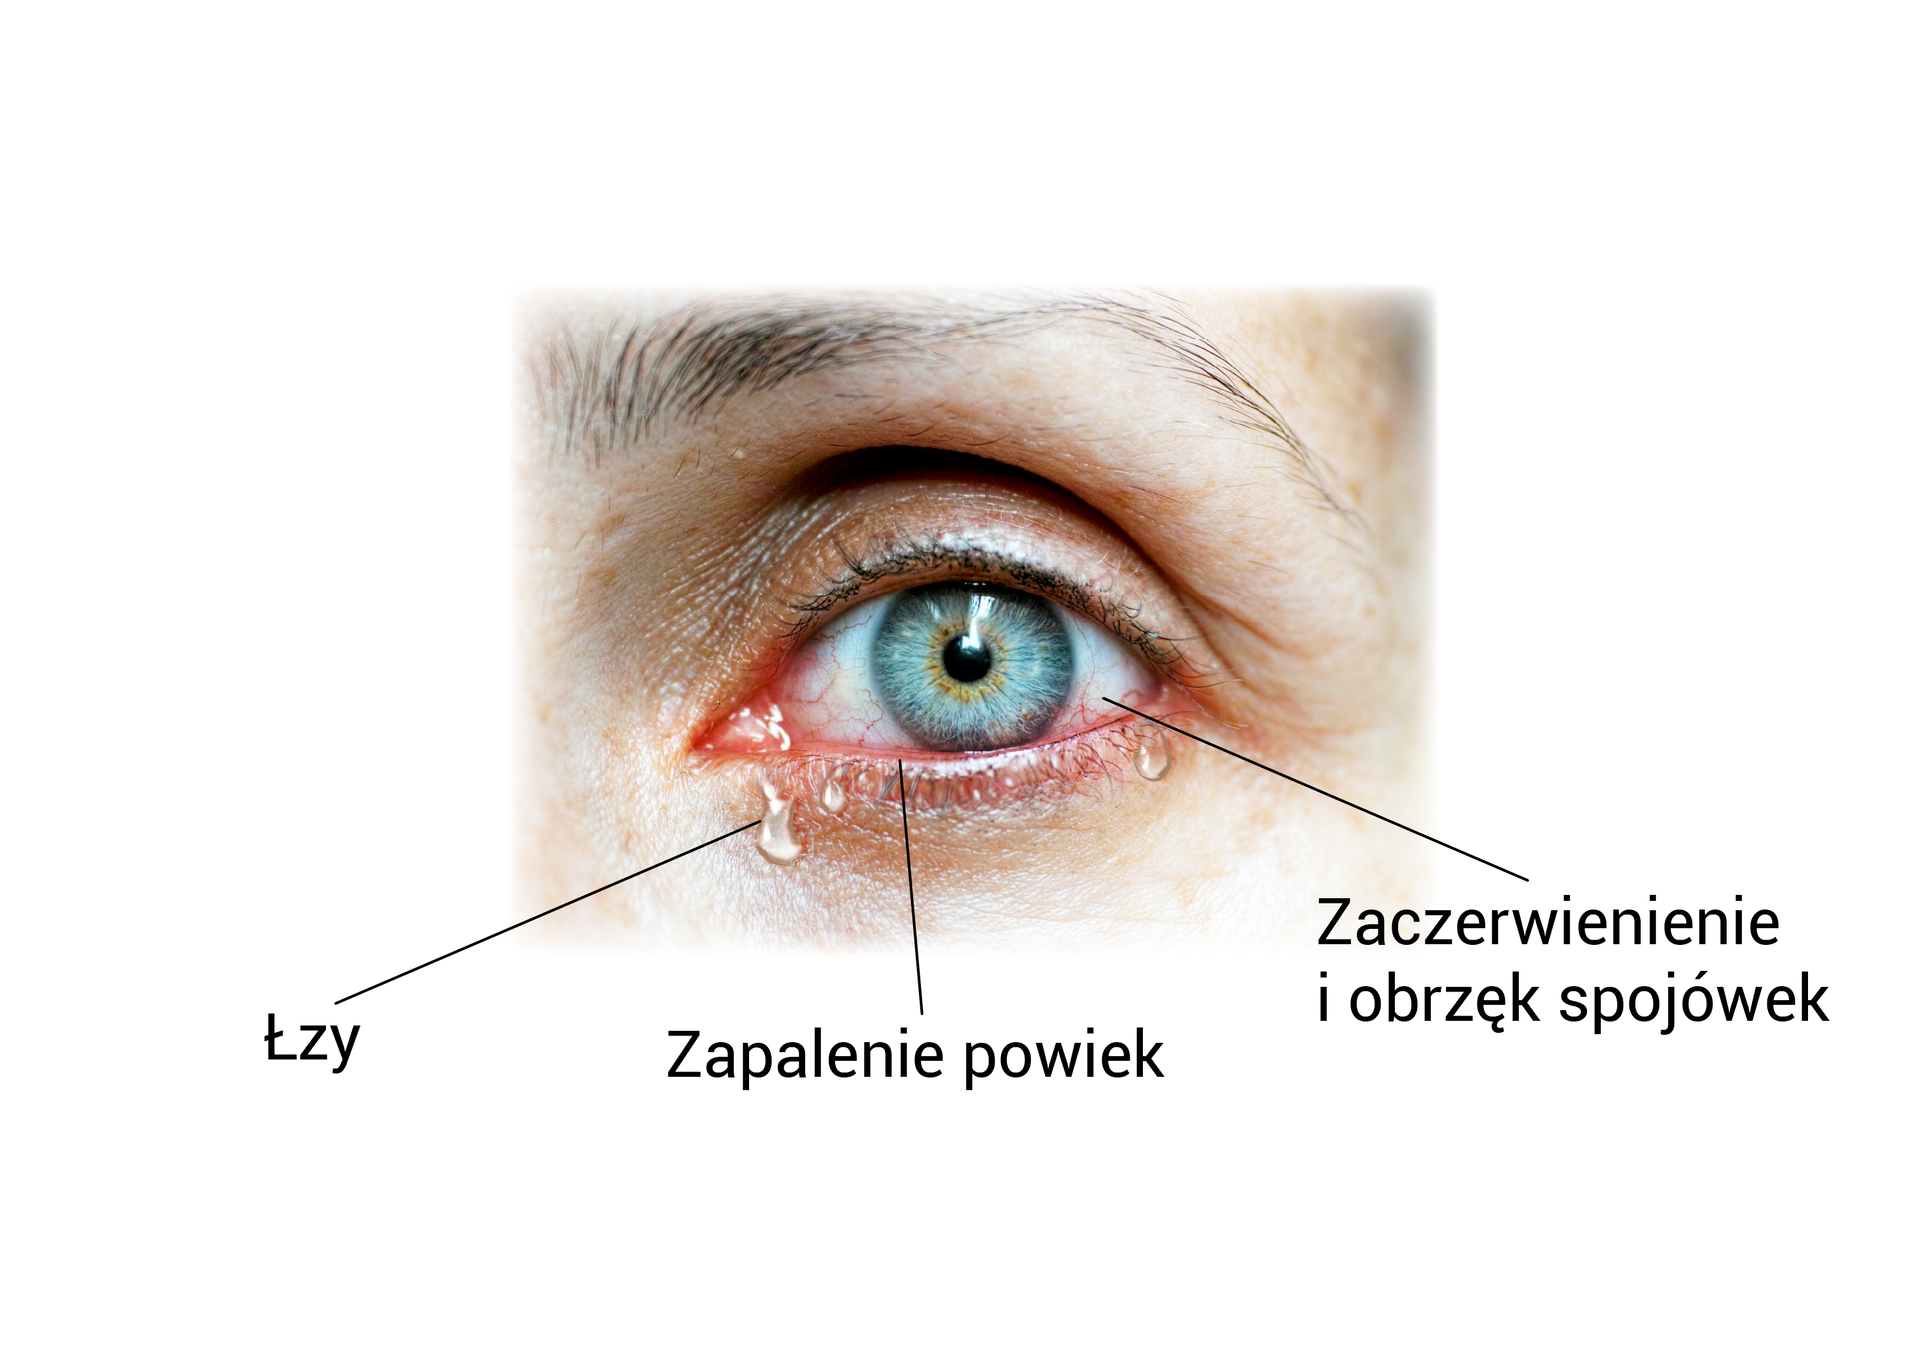 Zdjęcie przedstawia zbliżenie na oko, na którym zaznaczono łzy, zapalenie powiek (zaczerwienione powieki) oraz zaczerwienienie i obrzęk spojówek.